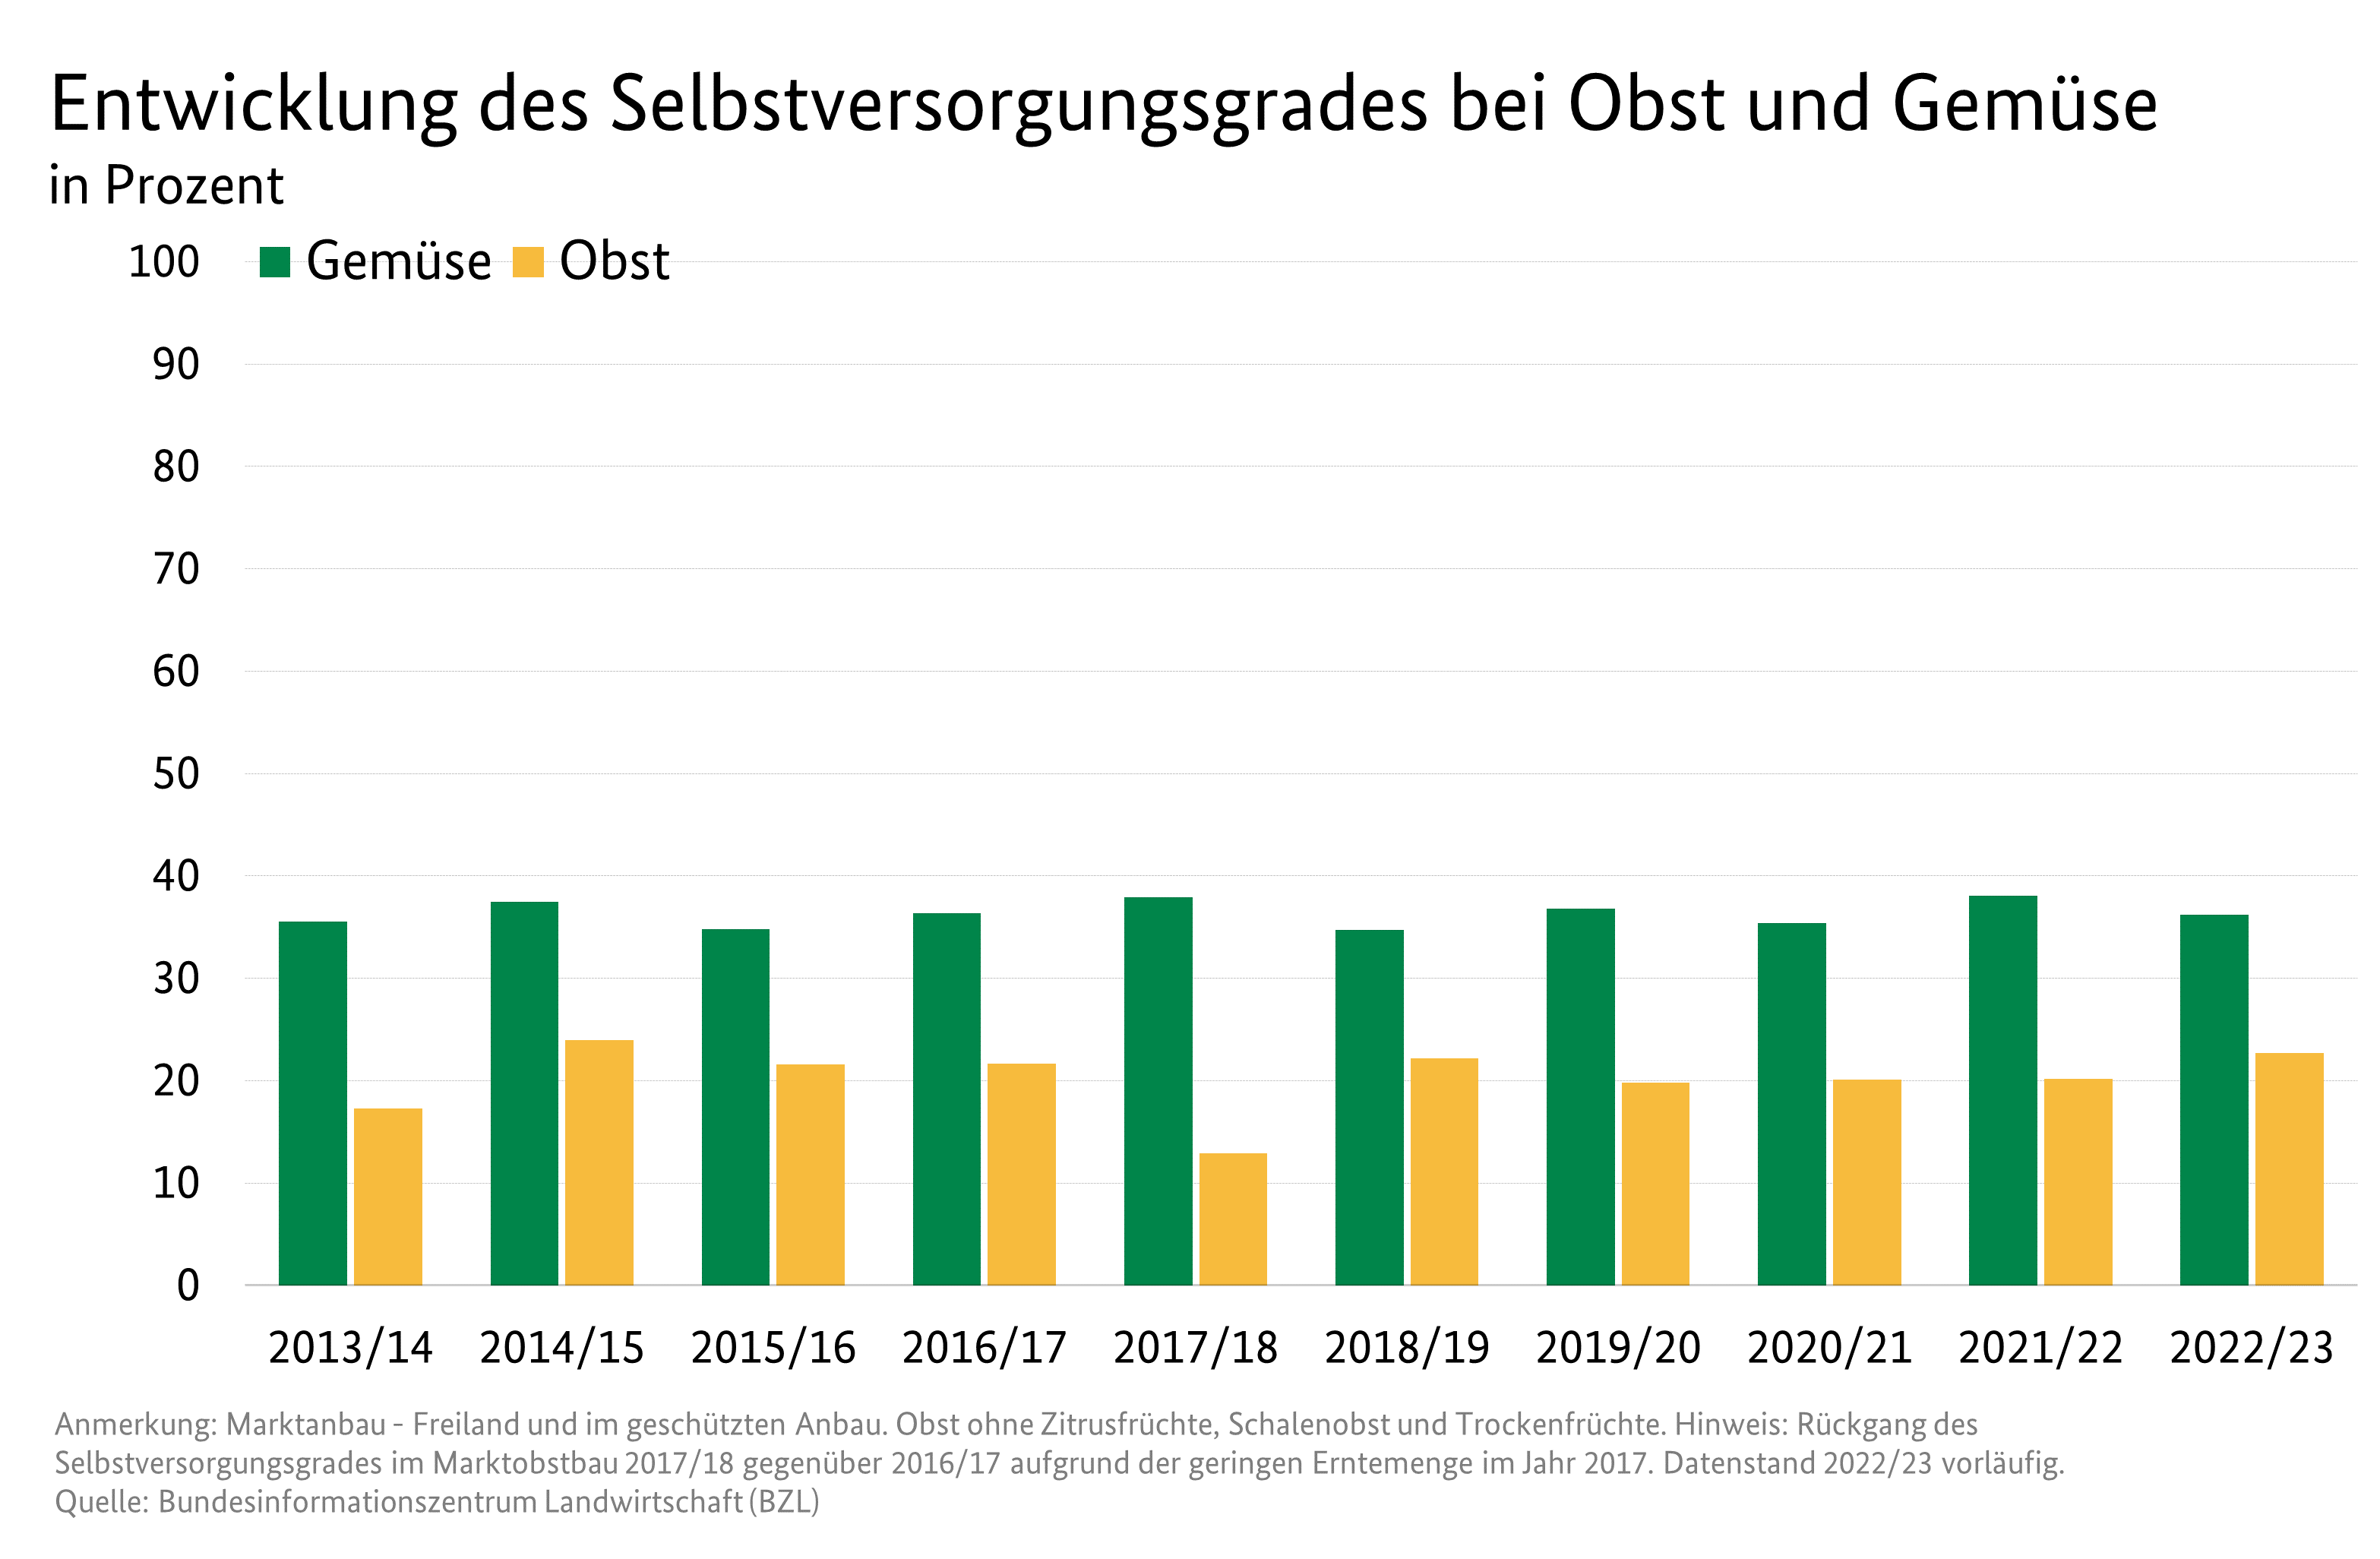 Säulendiagramm: Selbstversorgungsgrad bei Obst und Gemüse in Deutschland. Werte bei Gemüse schwanken zwischen 30 und 40 %. Bei Obst sind es 13 bis 20 %.